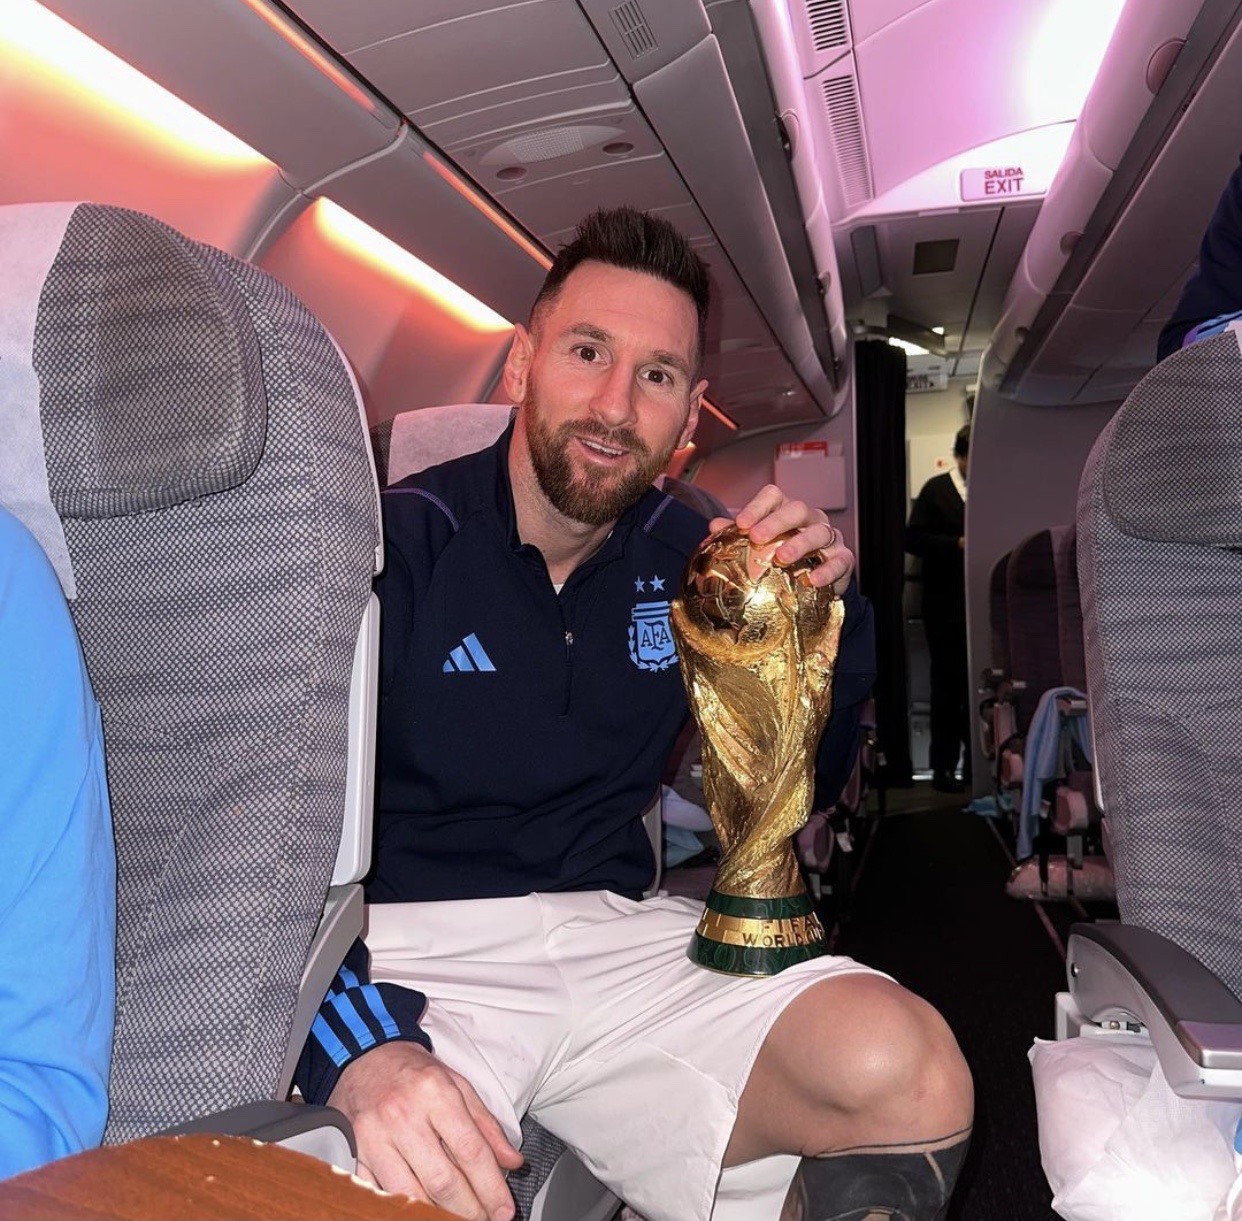 Tức là gì khi Messi và Mbappe sẽ đối đầu trong trận chung kết World Cup 2022? Đó là một cuộc chiến khốc liệt có thể giúp định đoạt vị trí quán quân. Bạn không nên bỏ lỡ những phẩm chất vượt trội và kinh nghiệm của cả hai cầu thủ. Hãy xem những chân sút tài năng này sẽ làm gì để giành chiến thắng.